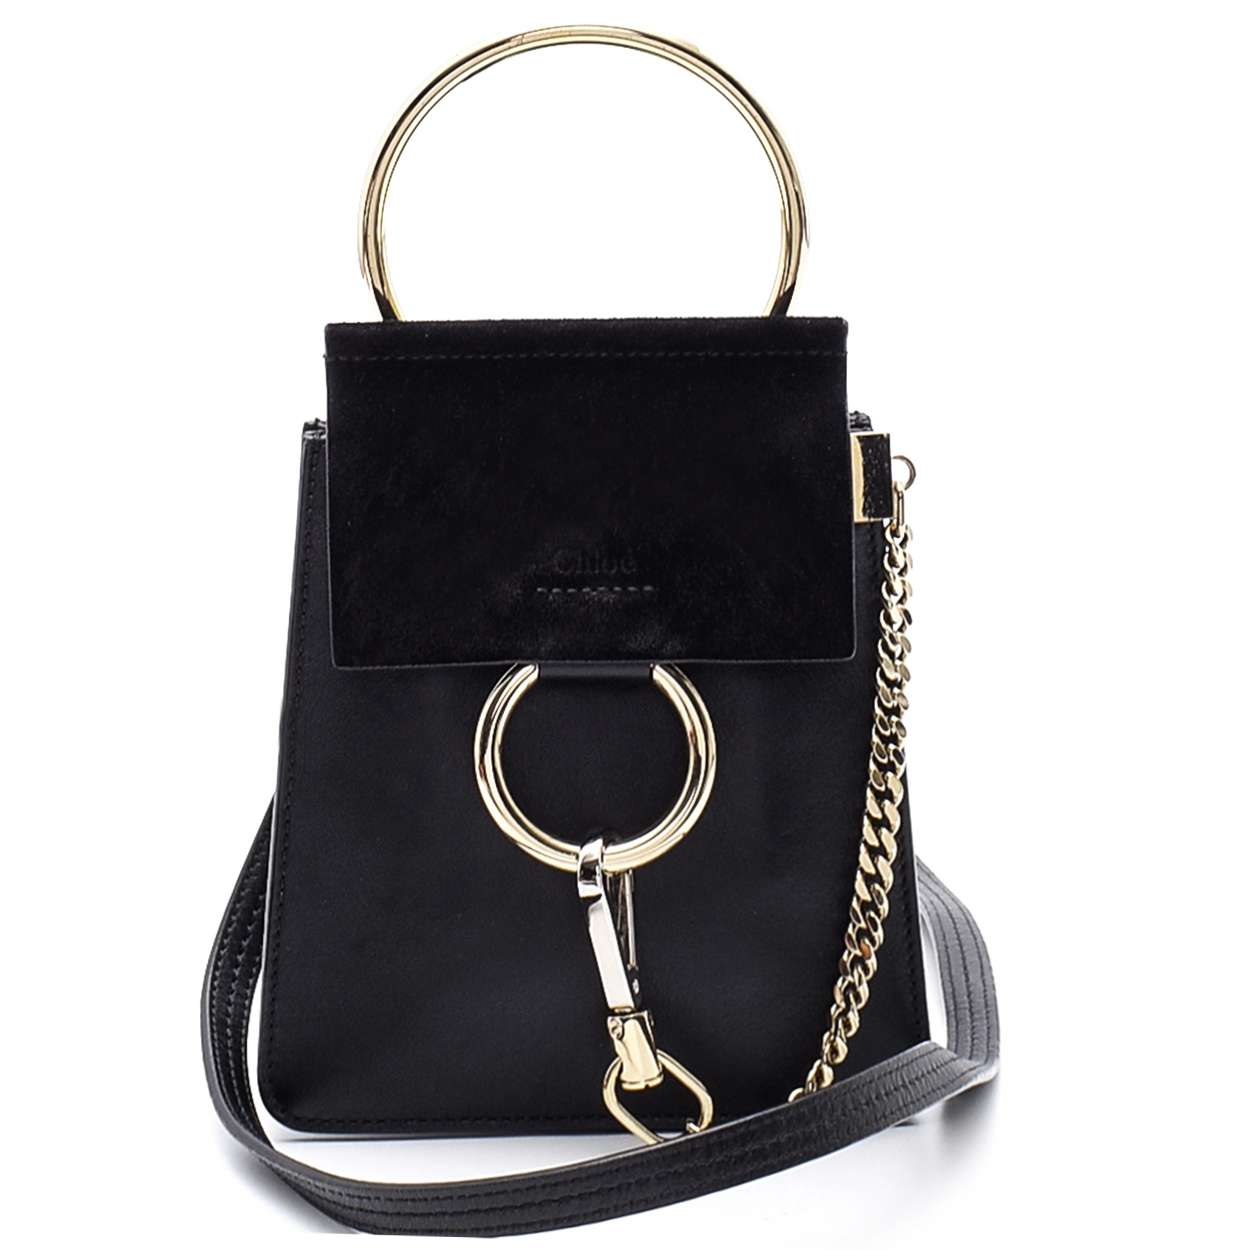 Chloe - Black Leather and Suede Faye Bracelet Messenger Bag